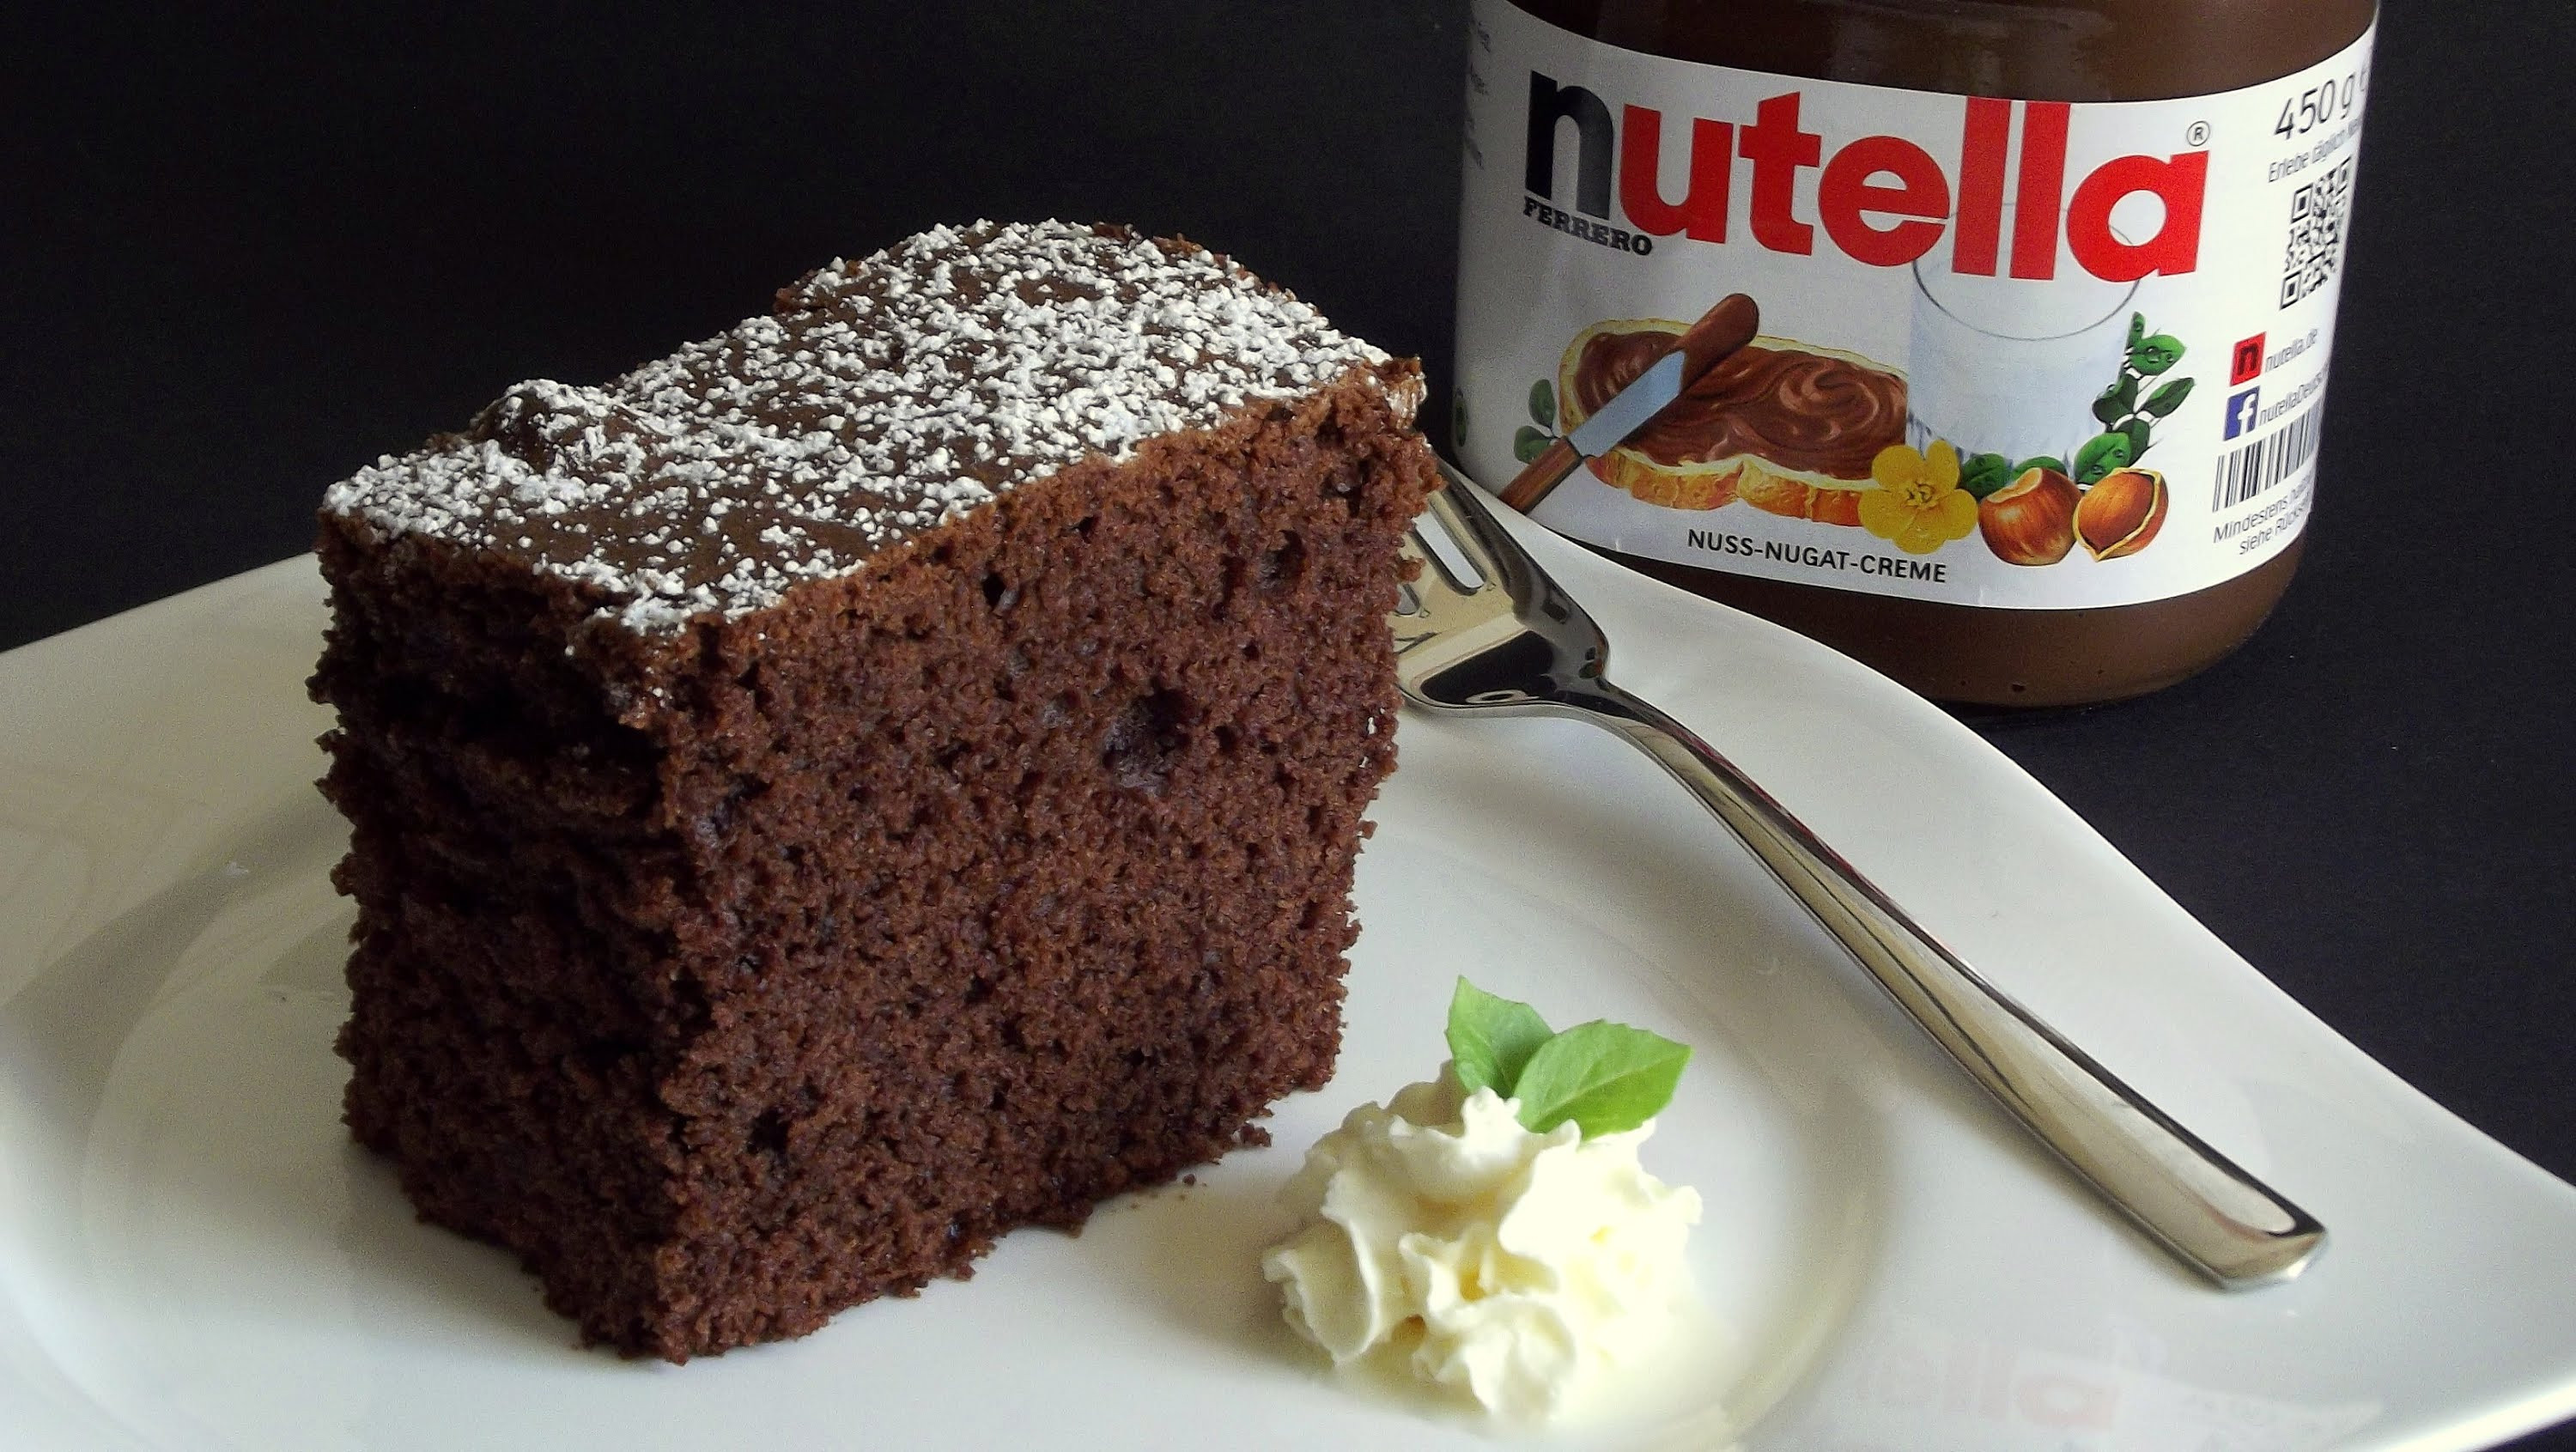 Schnelle Geburtstagskuchen
 Nutellakuchen Auf Dem Blech — Rezepte Suchen